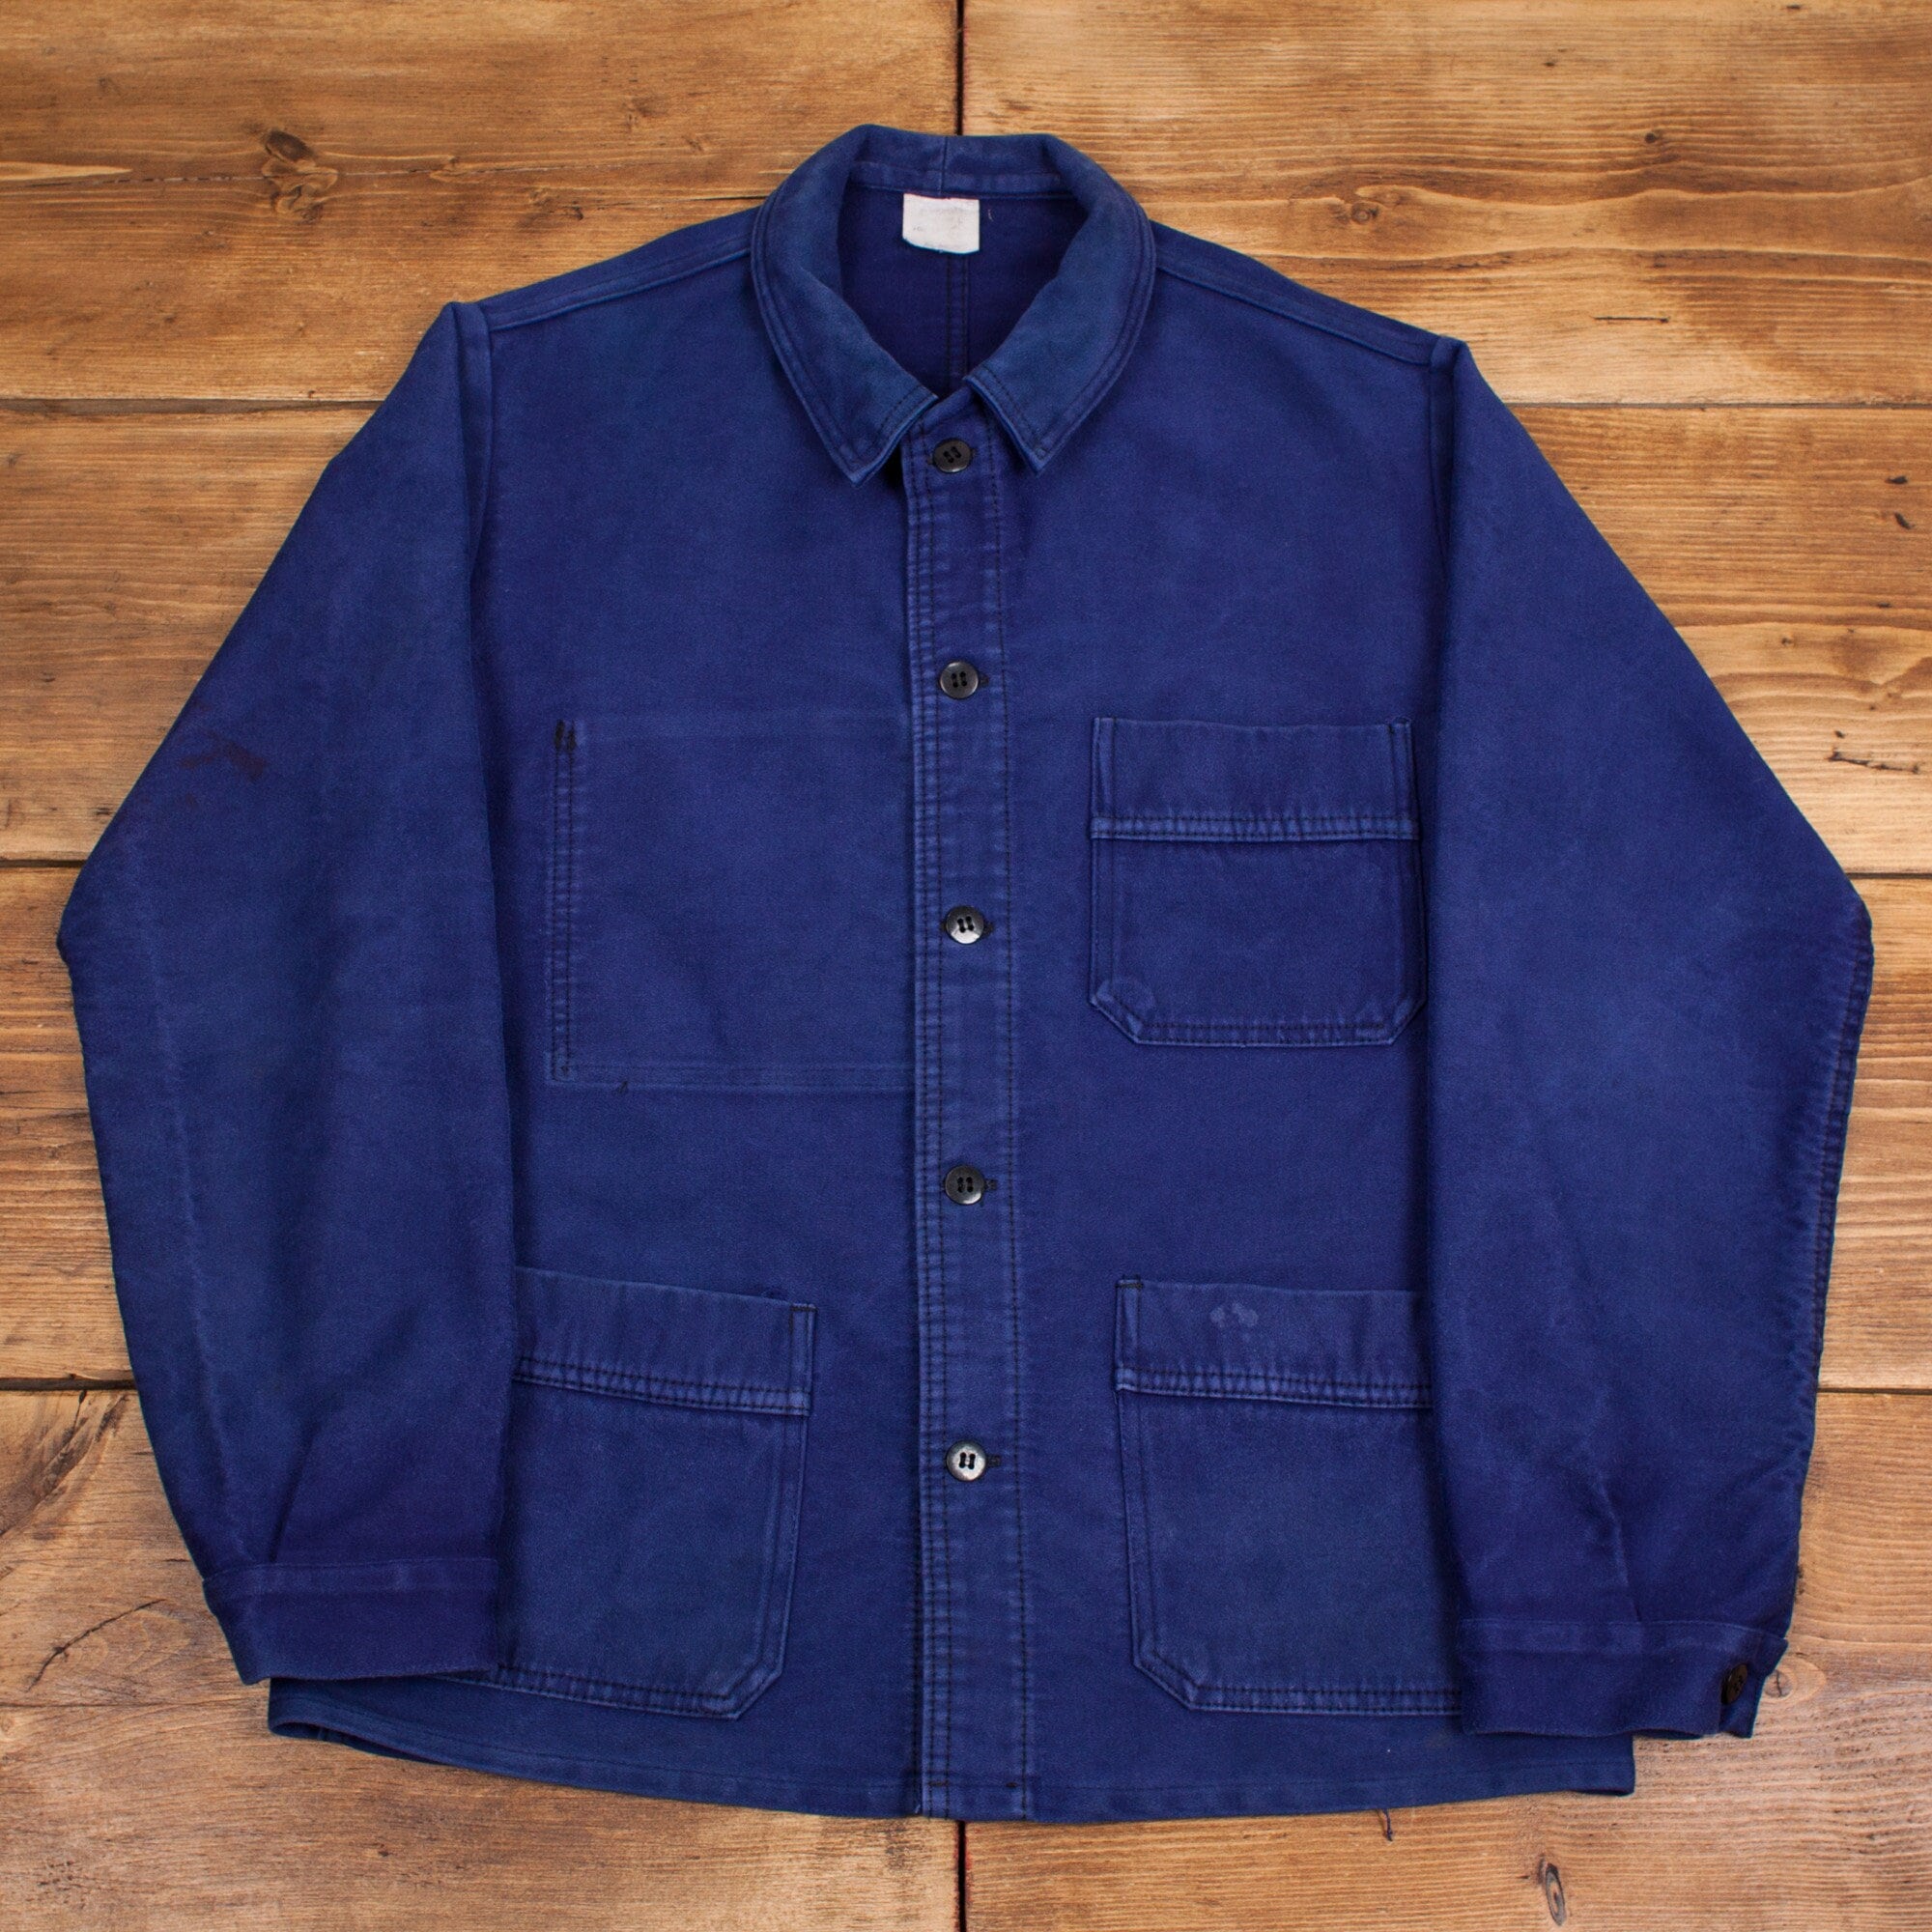 Vintage French Workwear Jacket Medium Moleskin Chore Cotton